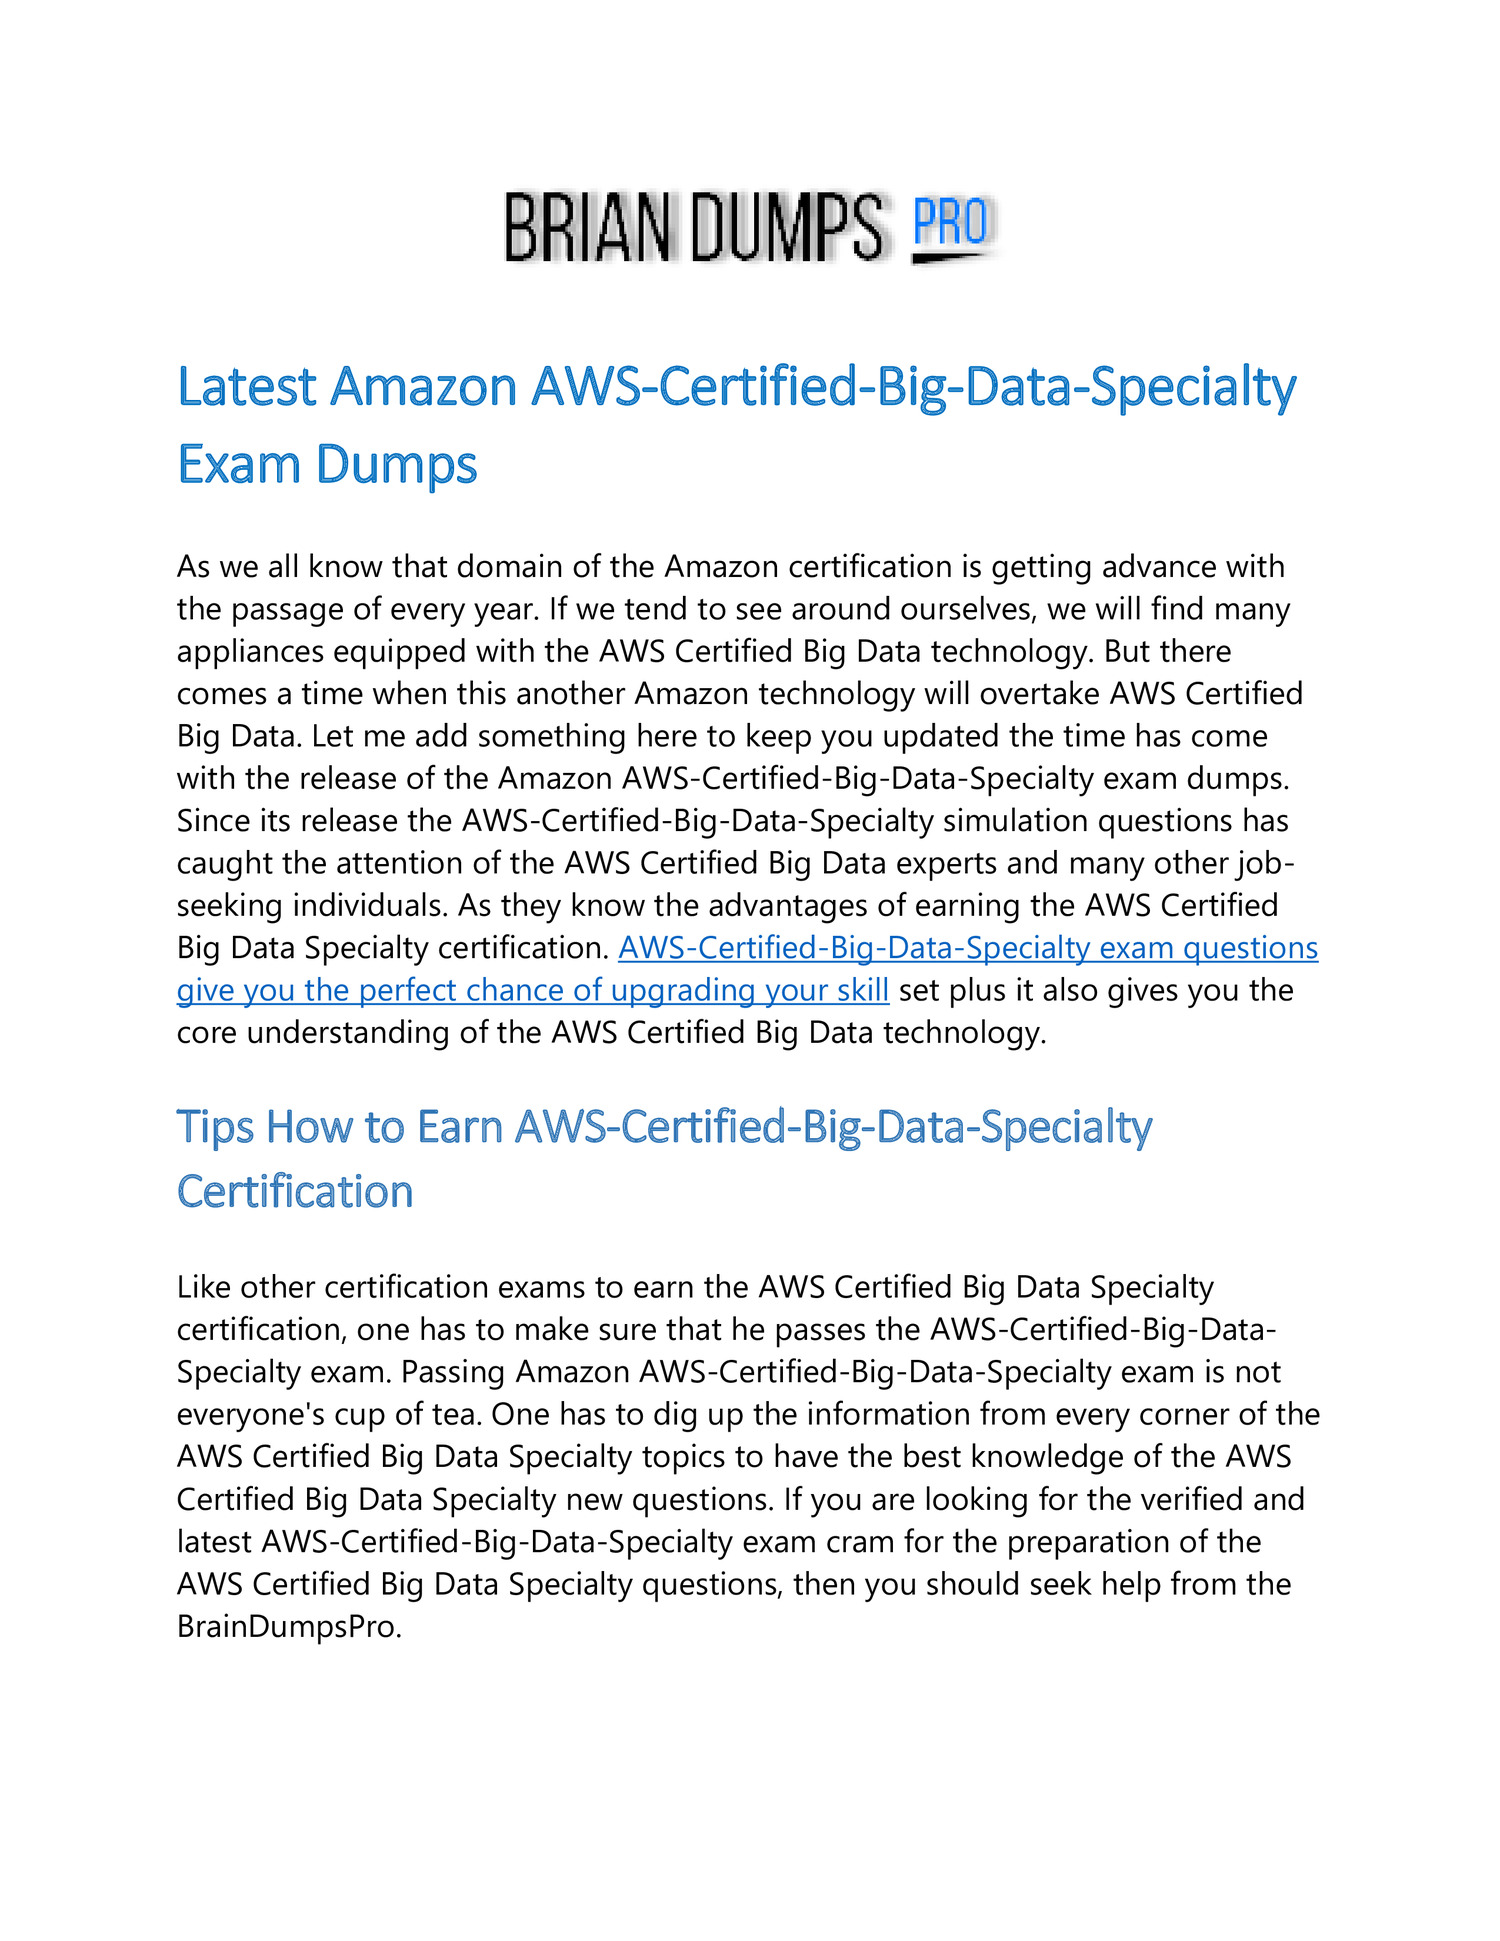 AWS-Certified-Data-Analytics-Specialty Prüfungen